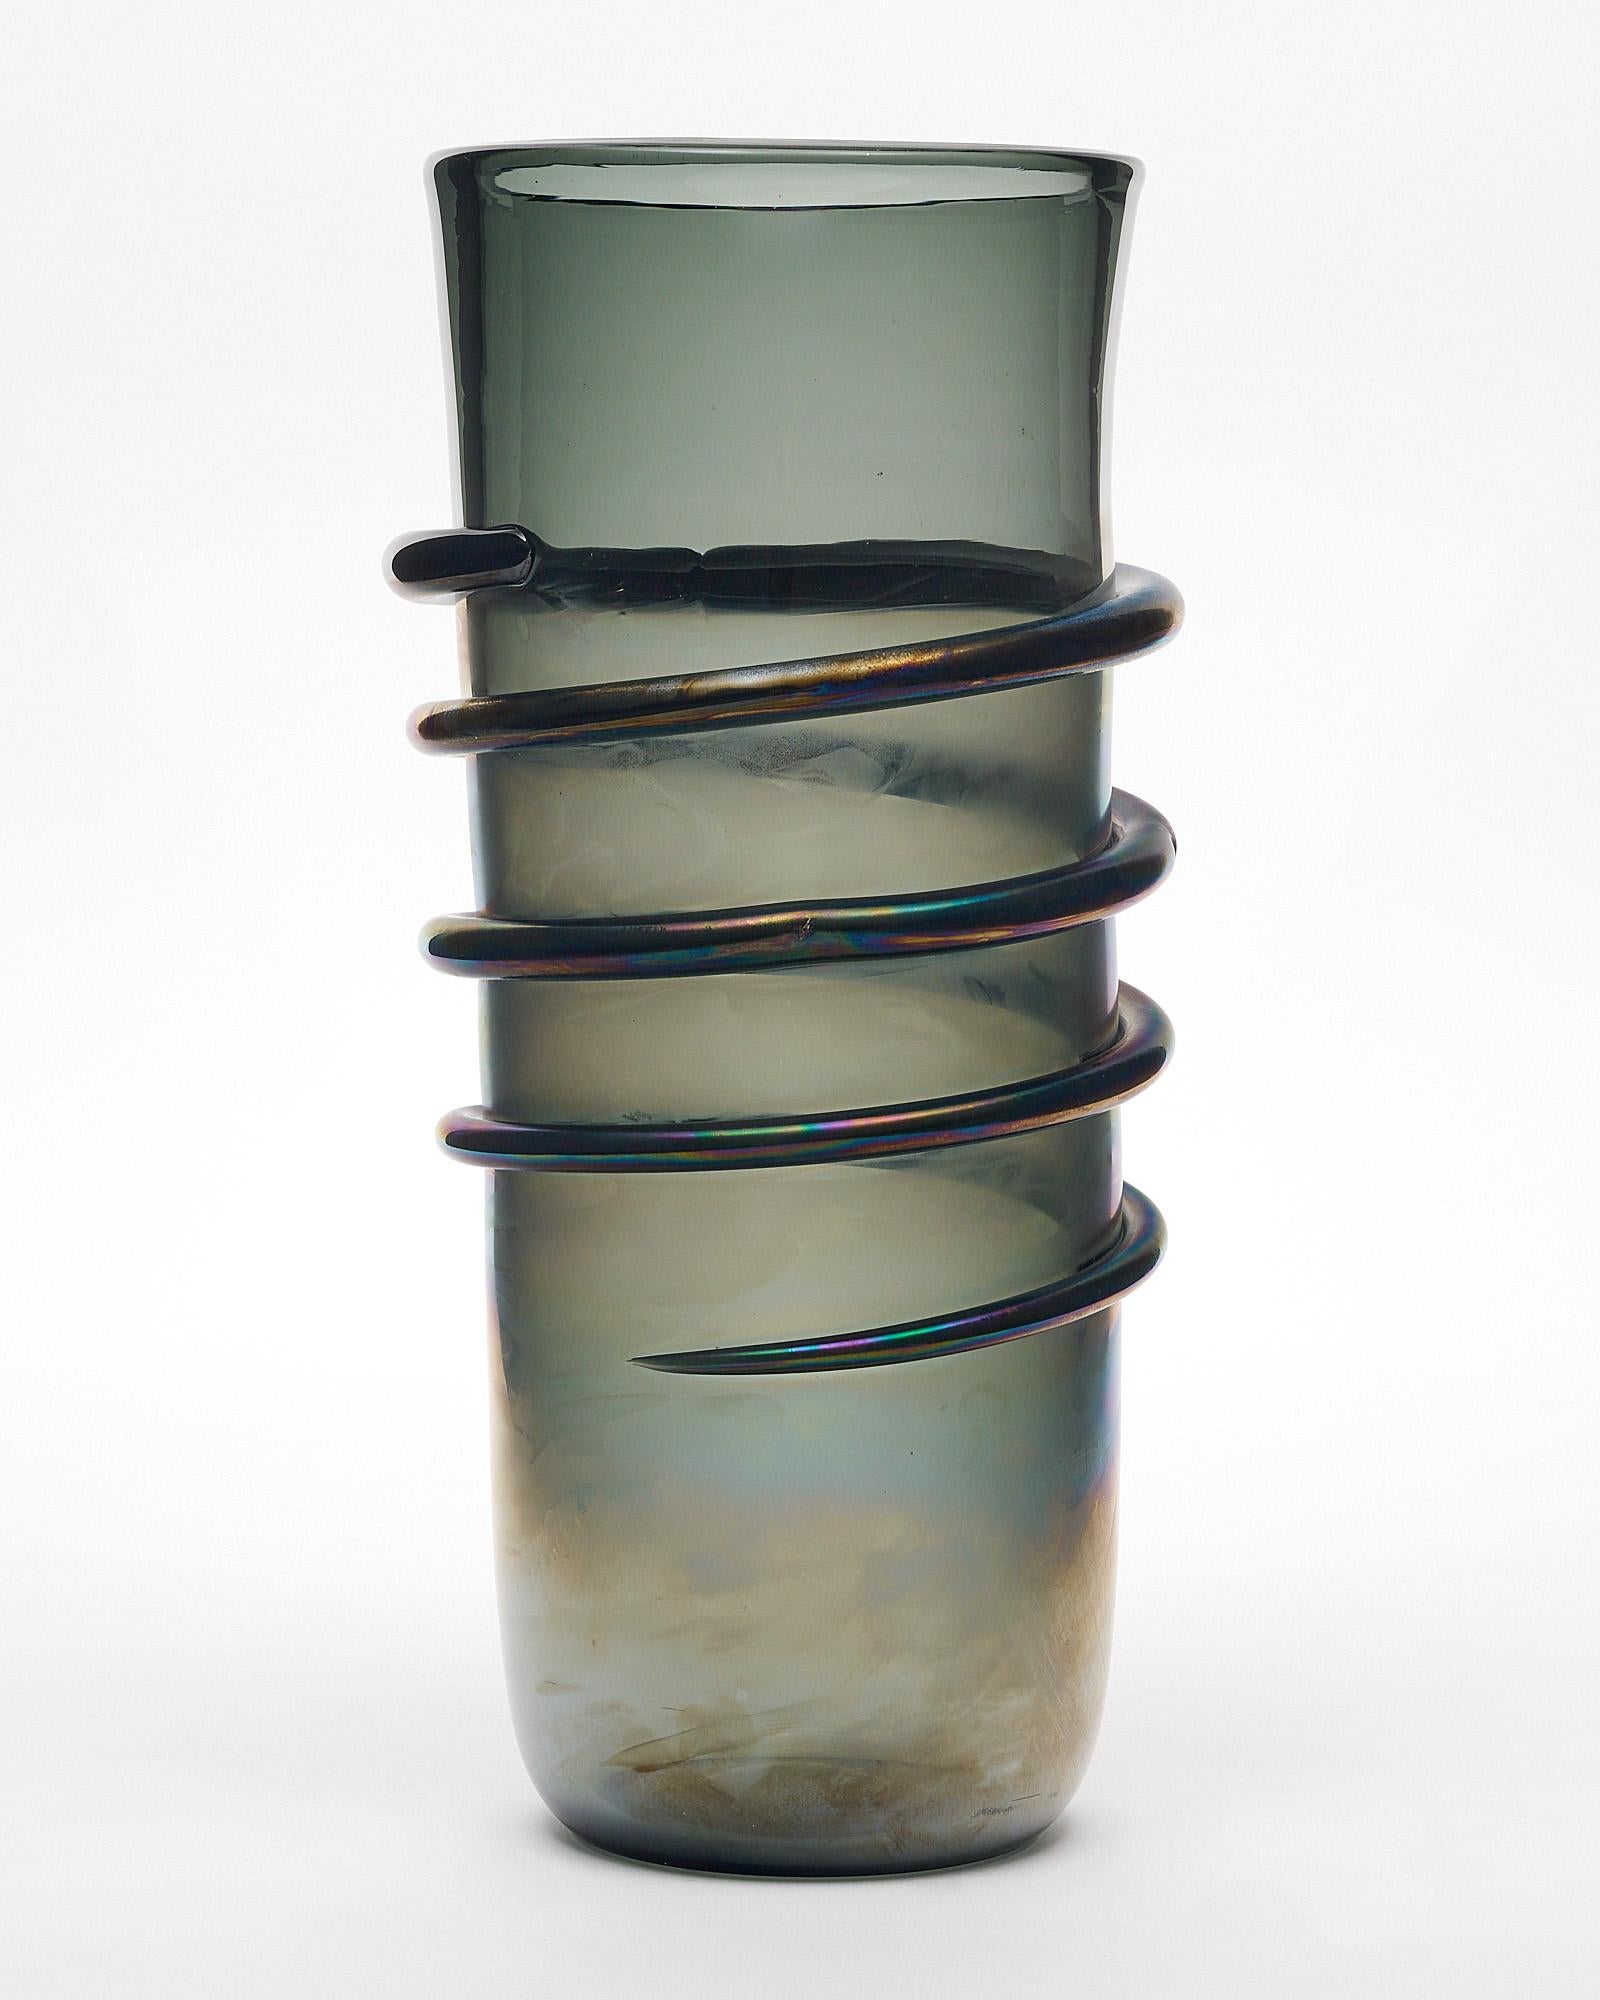 Vase en verre de Murano, fabriqué en verre soufflé à la main sur l'île au large de Venise. Cette pièce présente un verre fumé foncé avec une finition irisée et une 